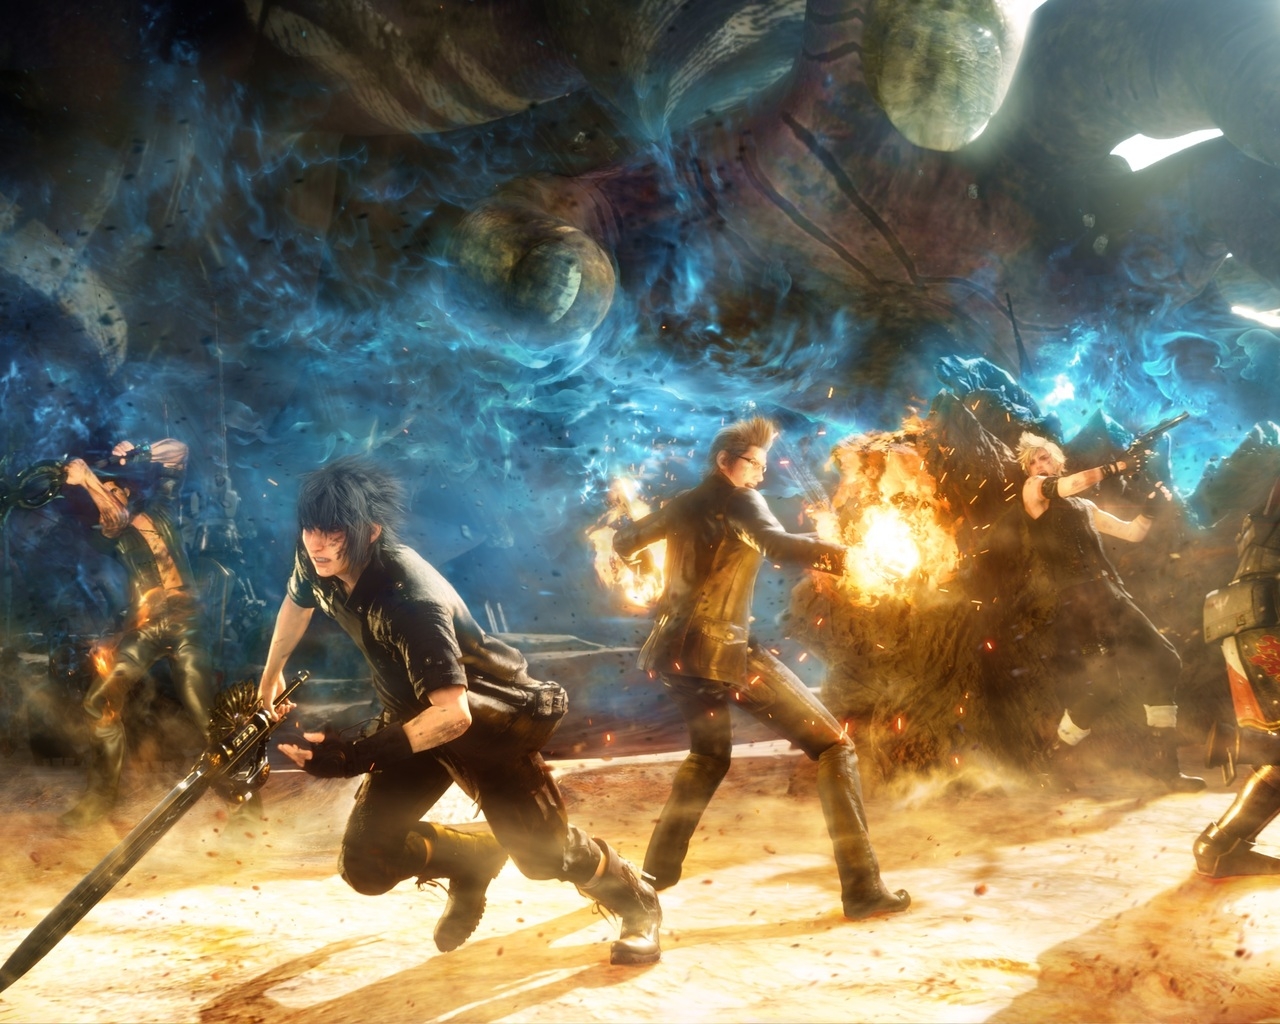 Final Fantasy V Battle for 1280 x 1024 resolution